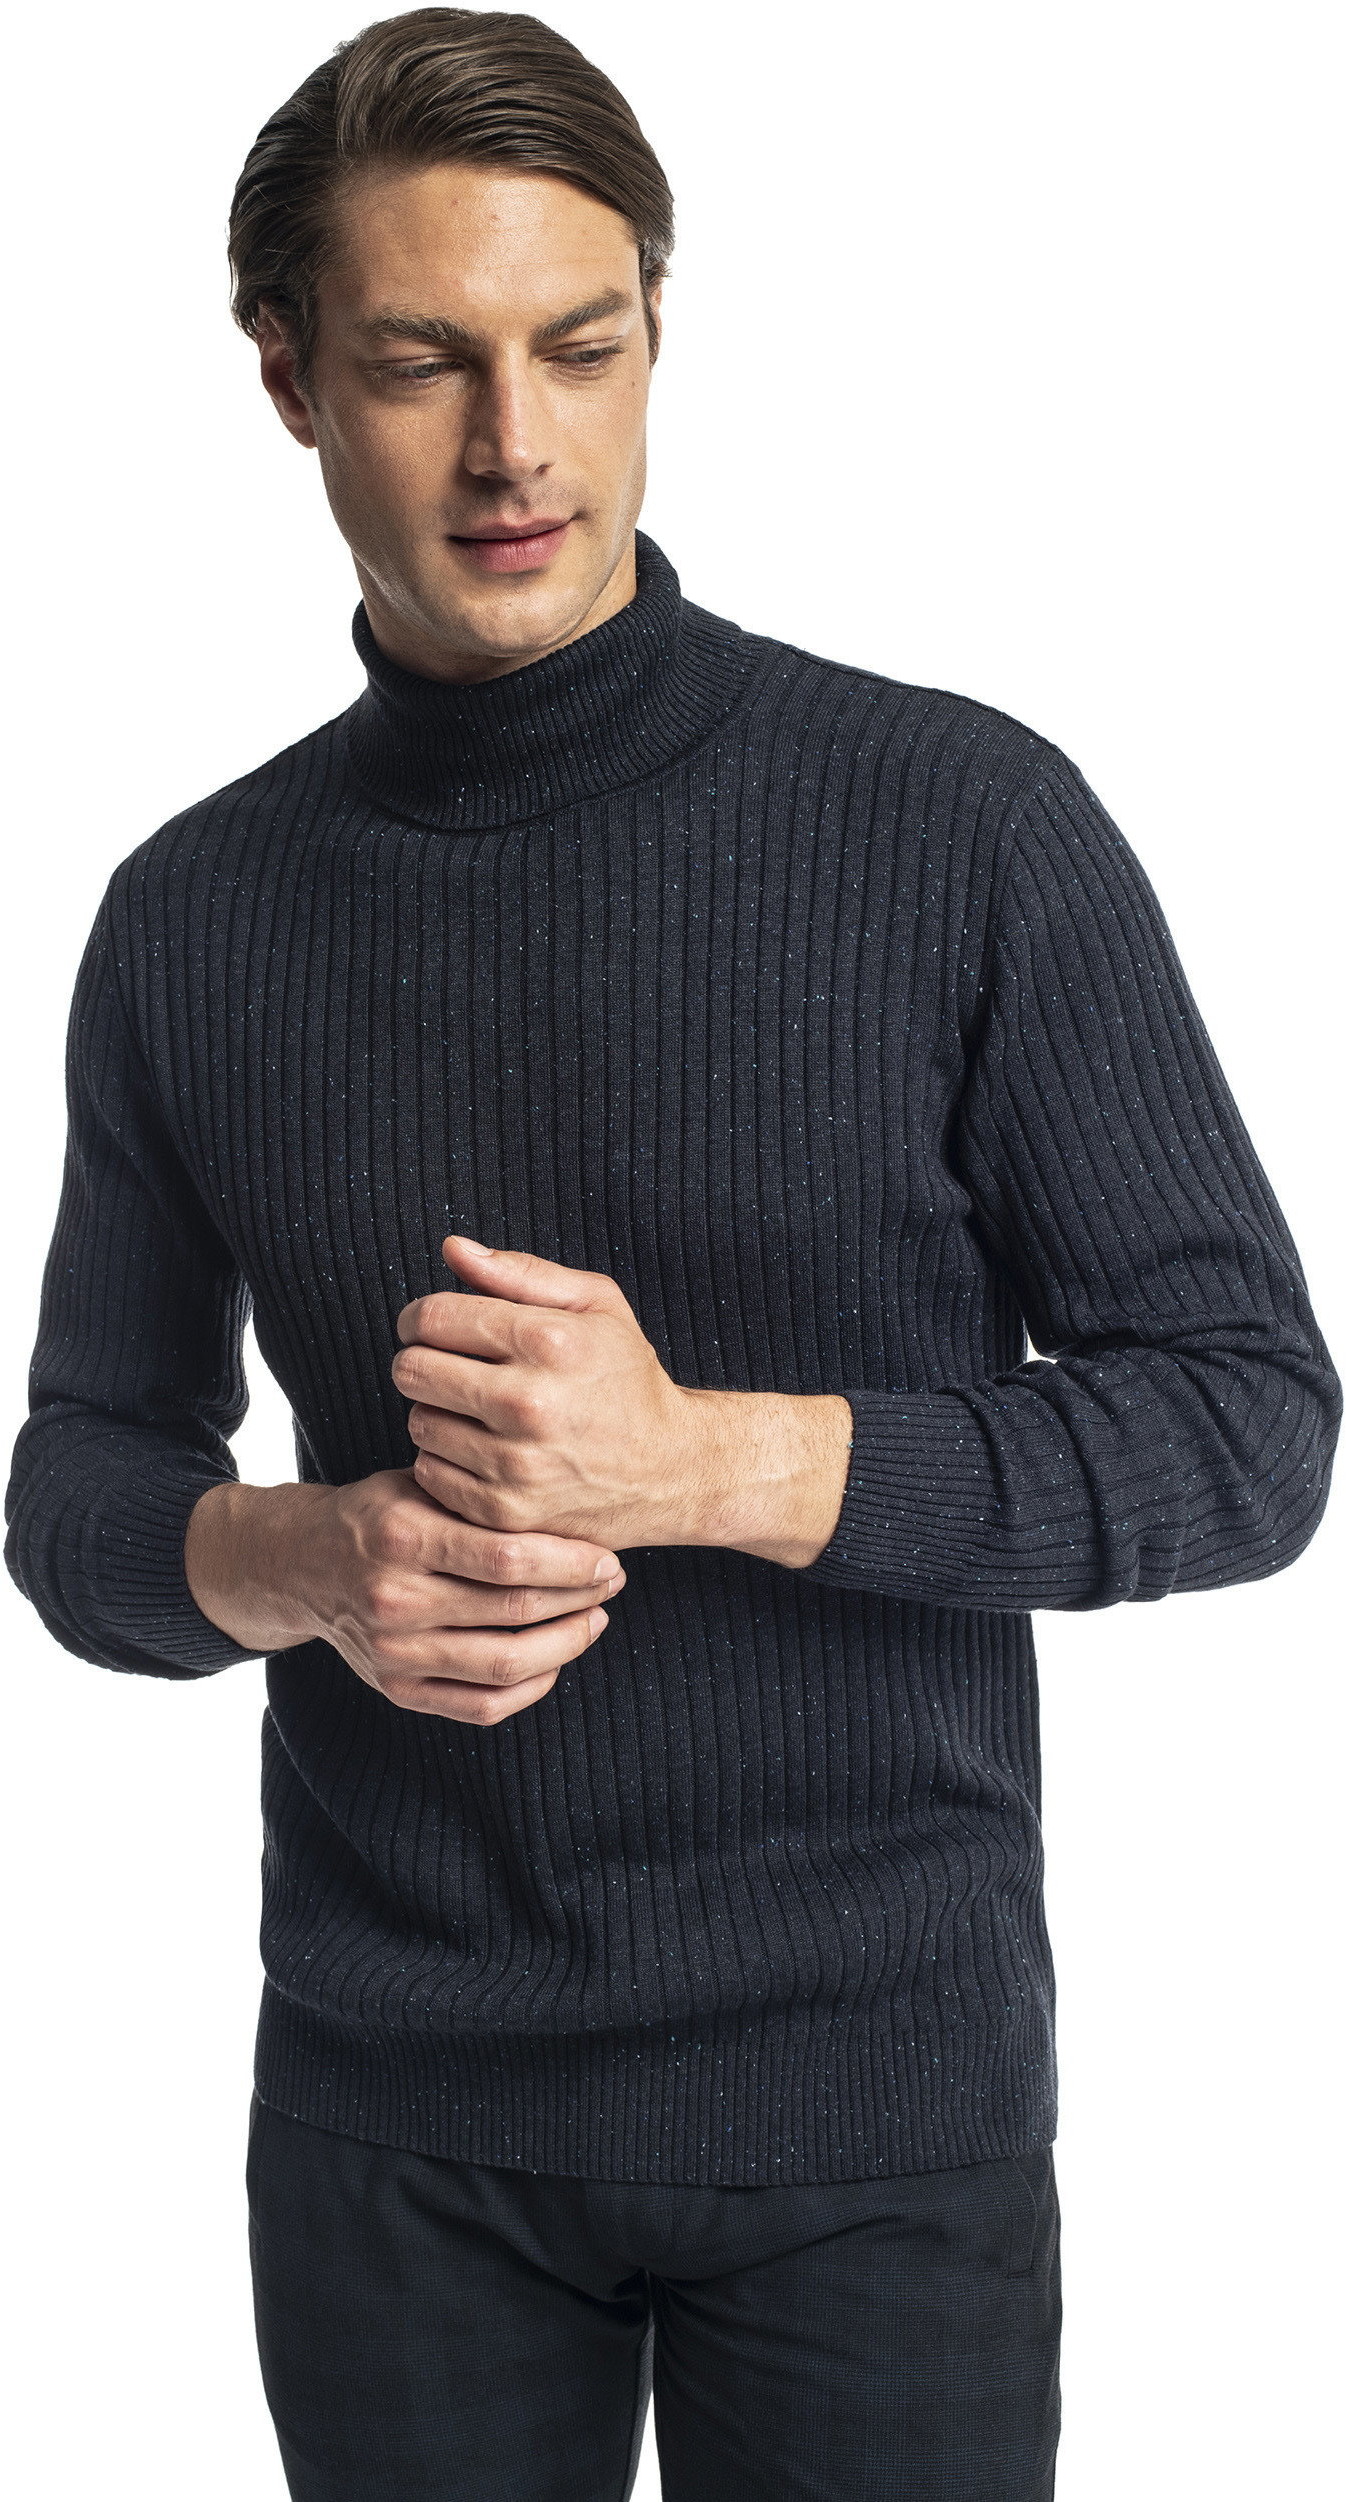 Swetry męskie - Ceny, Opinie, Sklepy